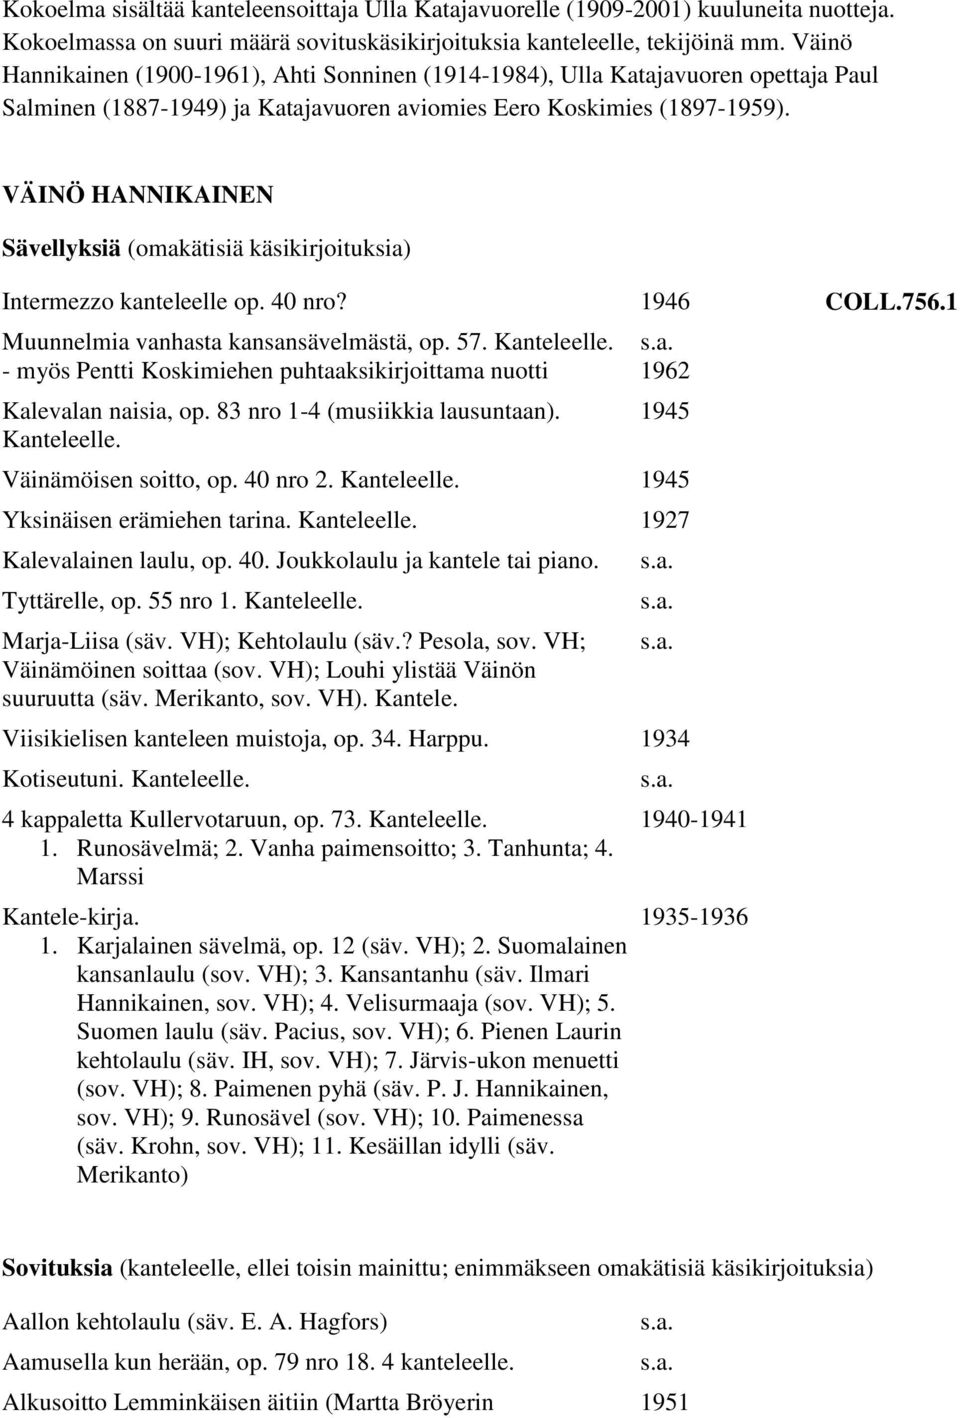 VÄINÖ HANNIKAINEN Sävellyksiä (omakätisiä käsikirjoituksia) Intermezzo kanteleelle op. 40 nro? 1946 COLL.756.1 Muunnelmia vanhasta kansansävelmästä, op. 57. Kanteleelle.